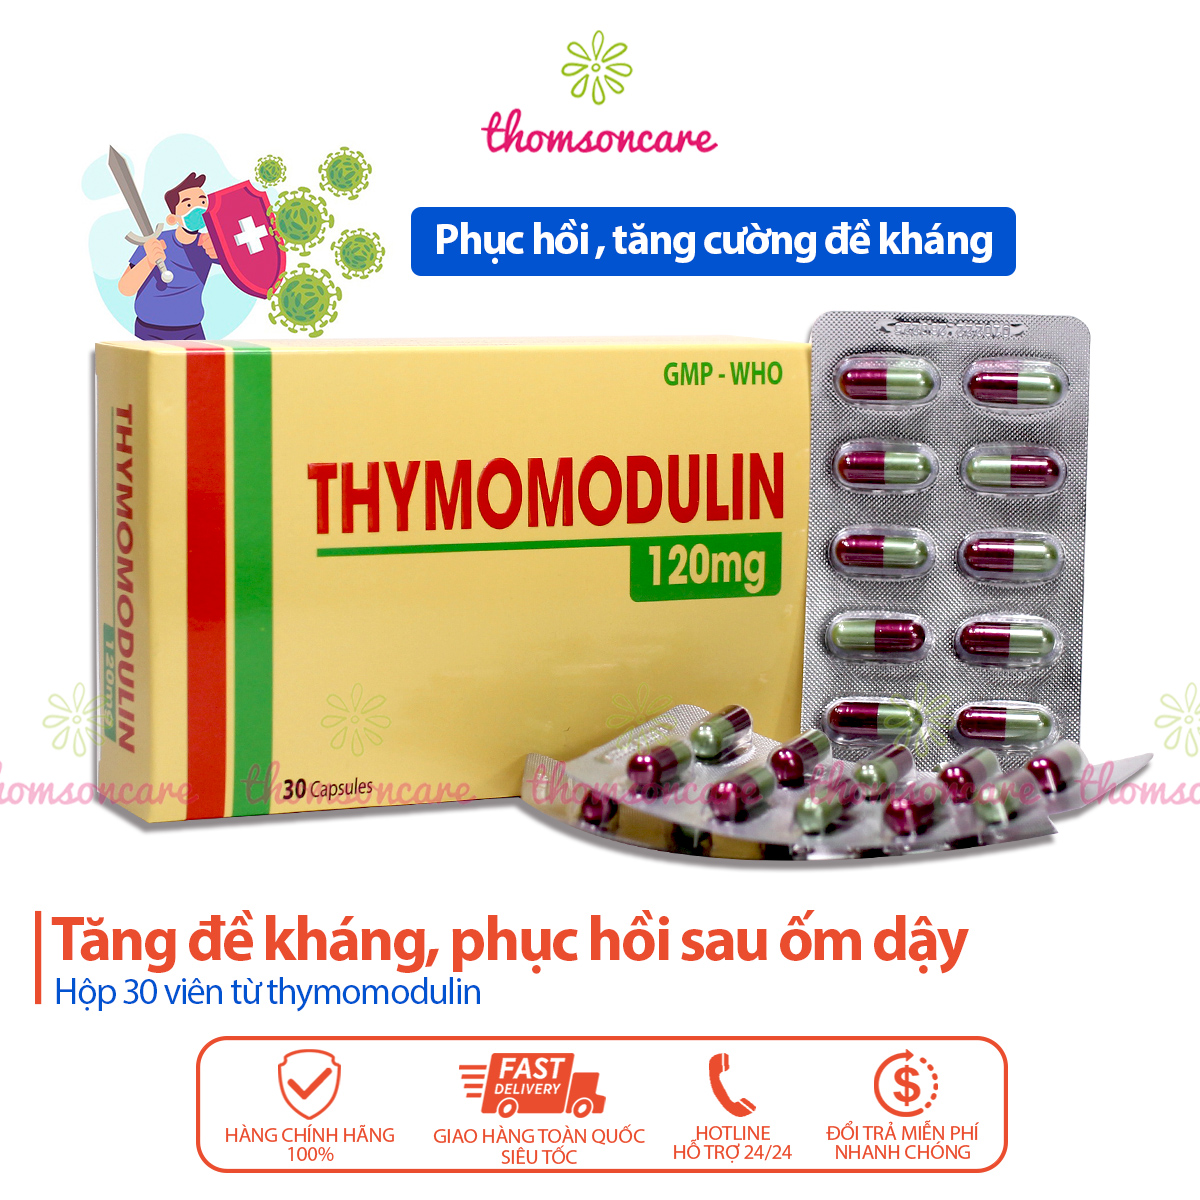 Thymomodulin 120mg tăng đề kháng, miễn dịch, giảm mệt mỏi bổ sung thymodulin hàm lượng cao hộp 30 viên